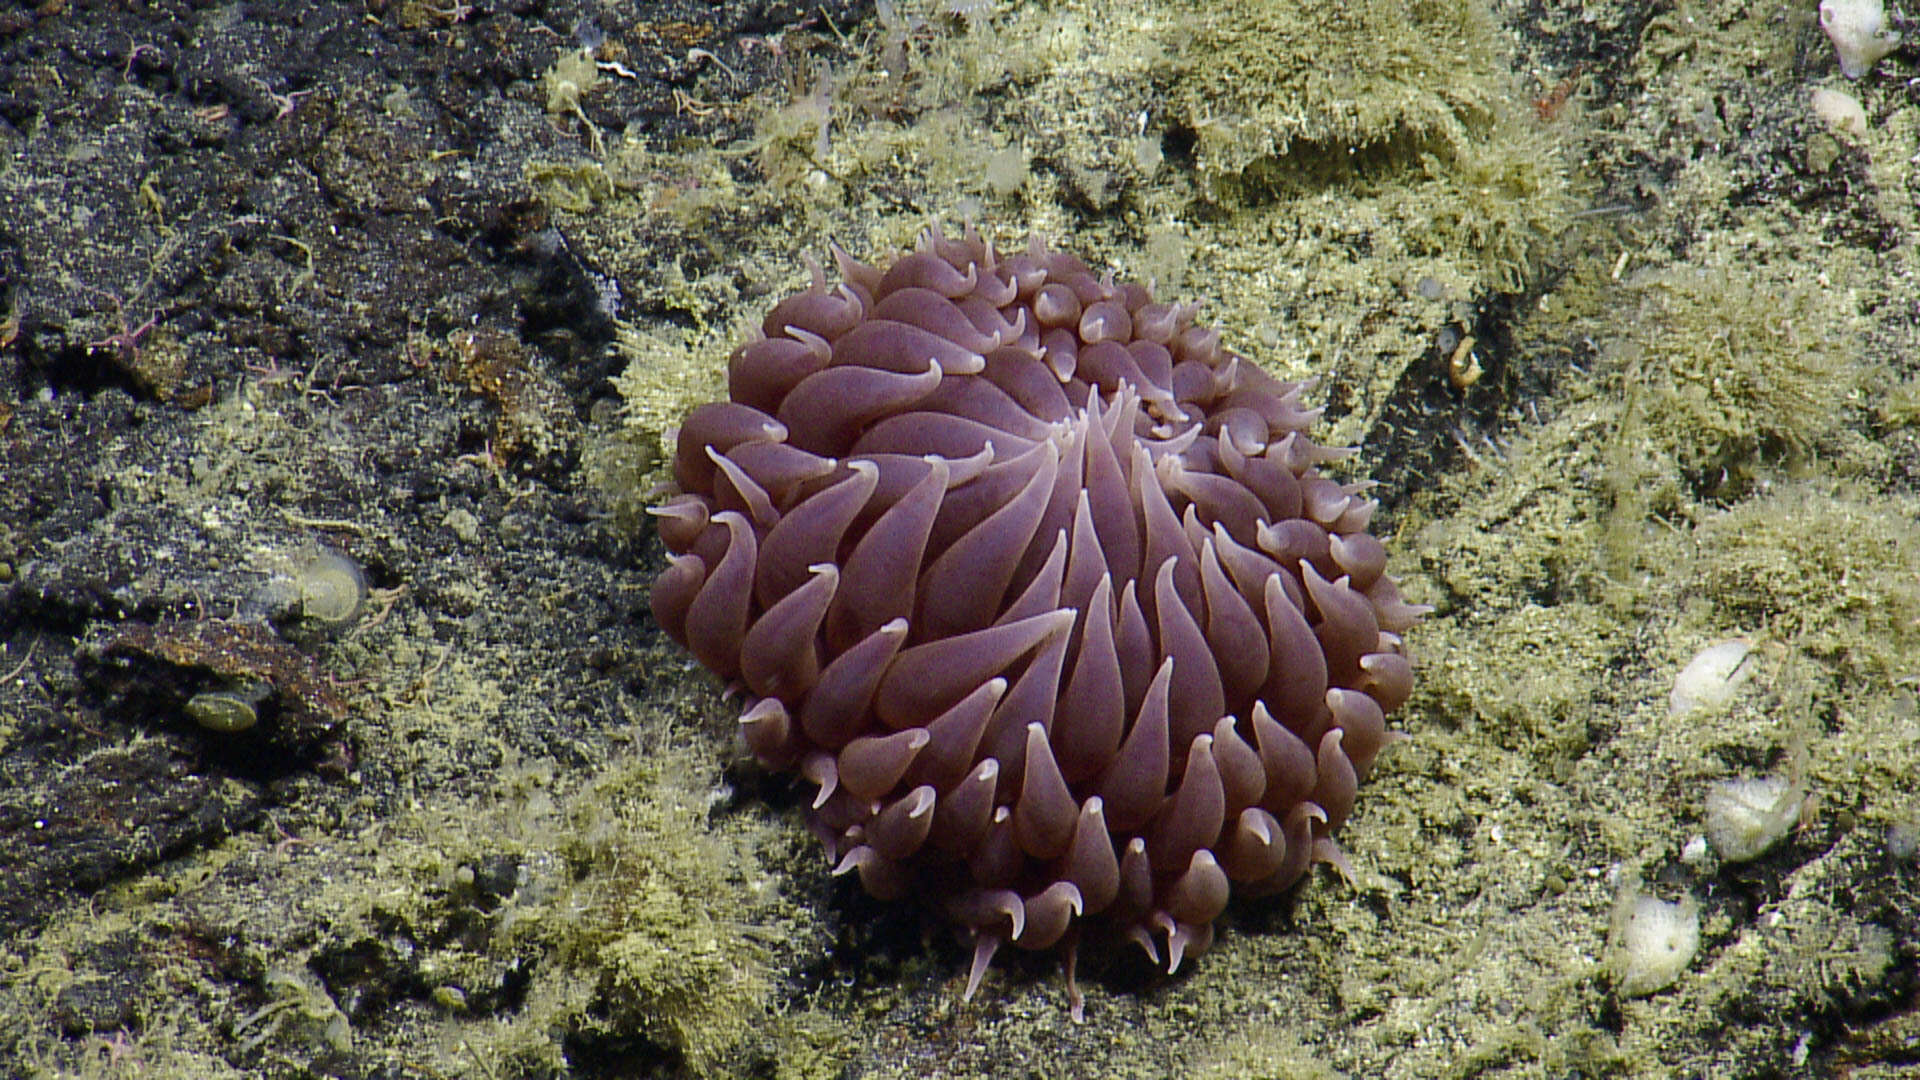 Image of Pom-pom anemone